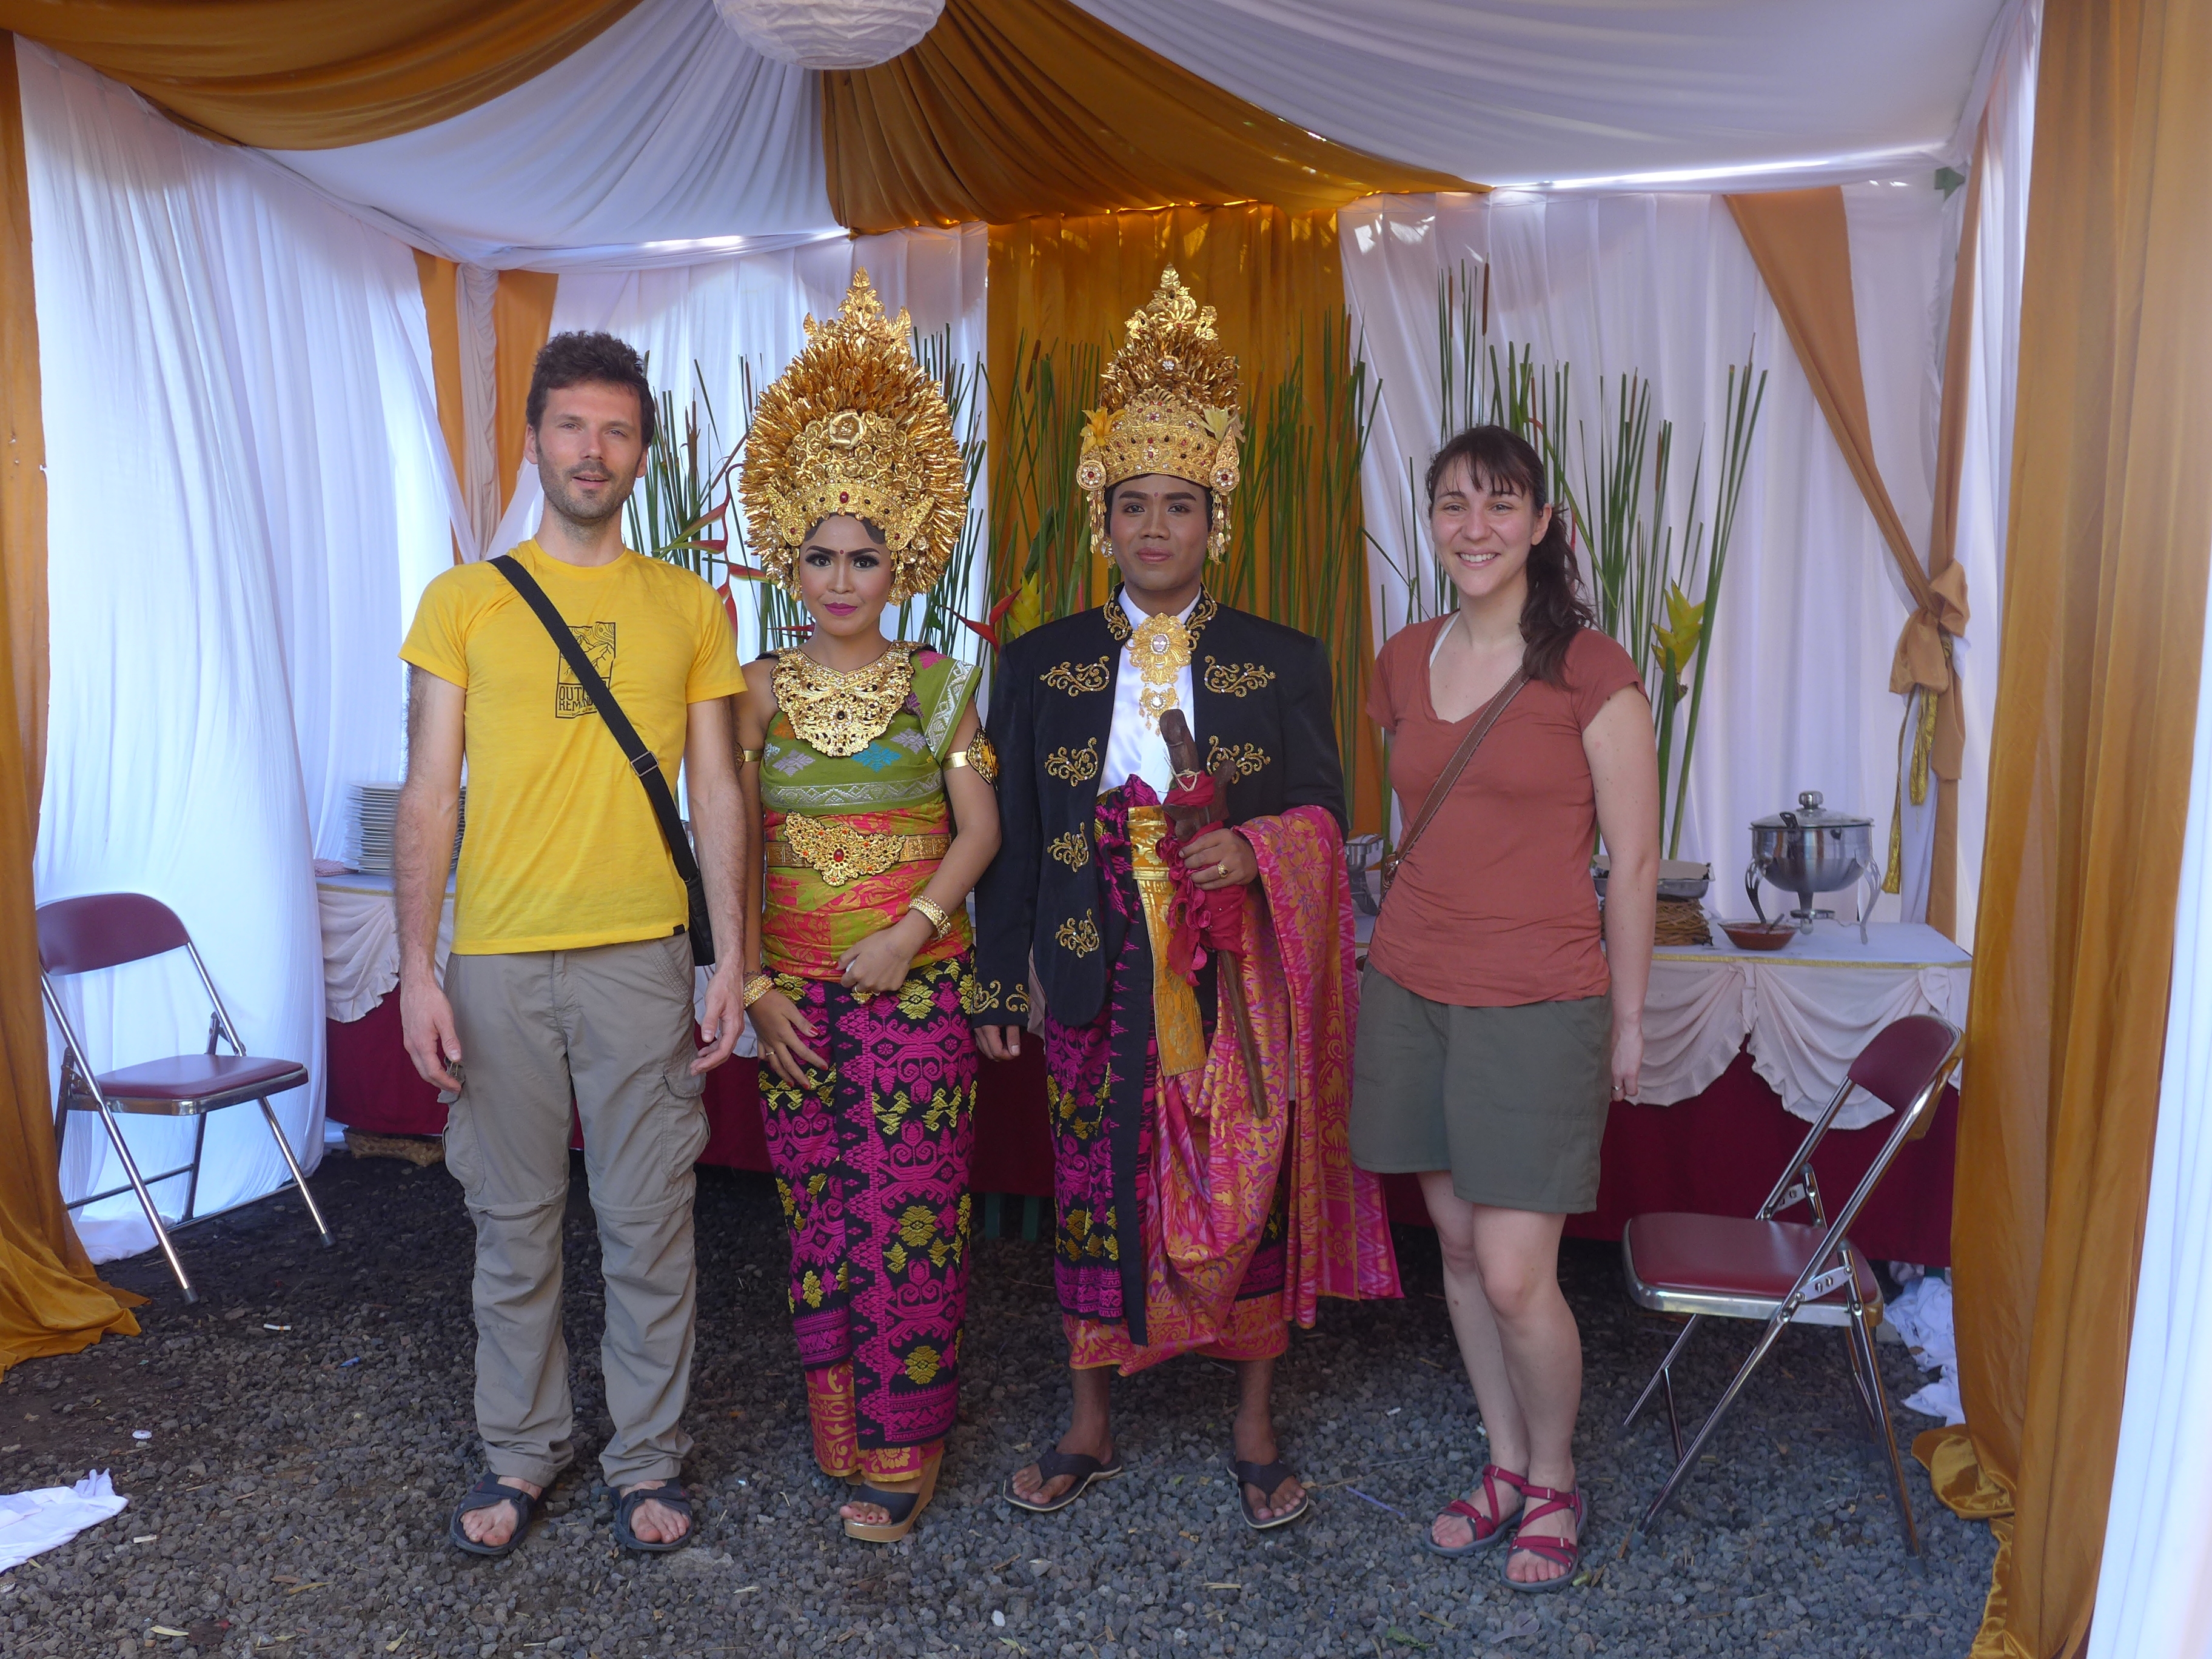 La société balinaise : entre hindouisme et tourisme